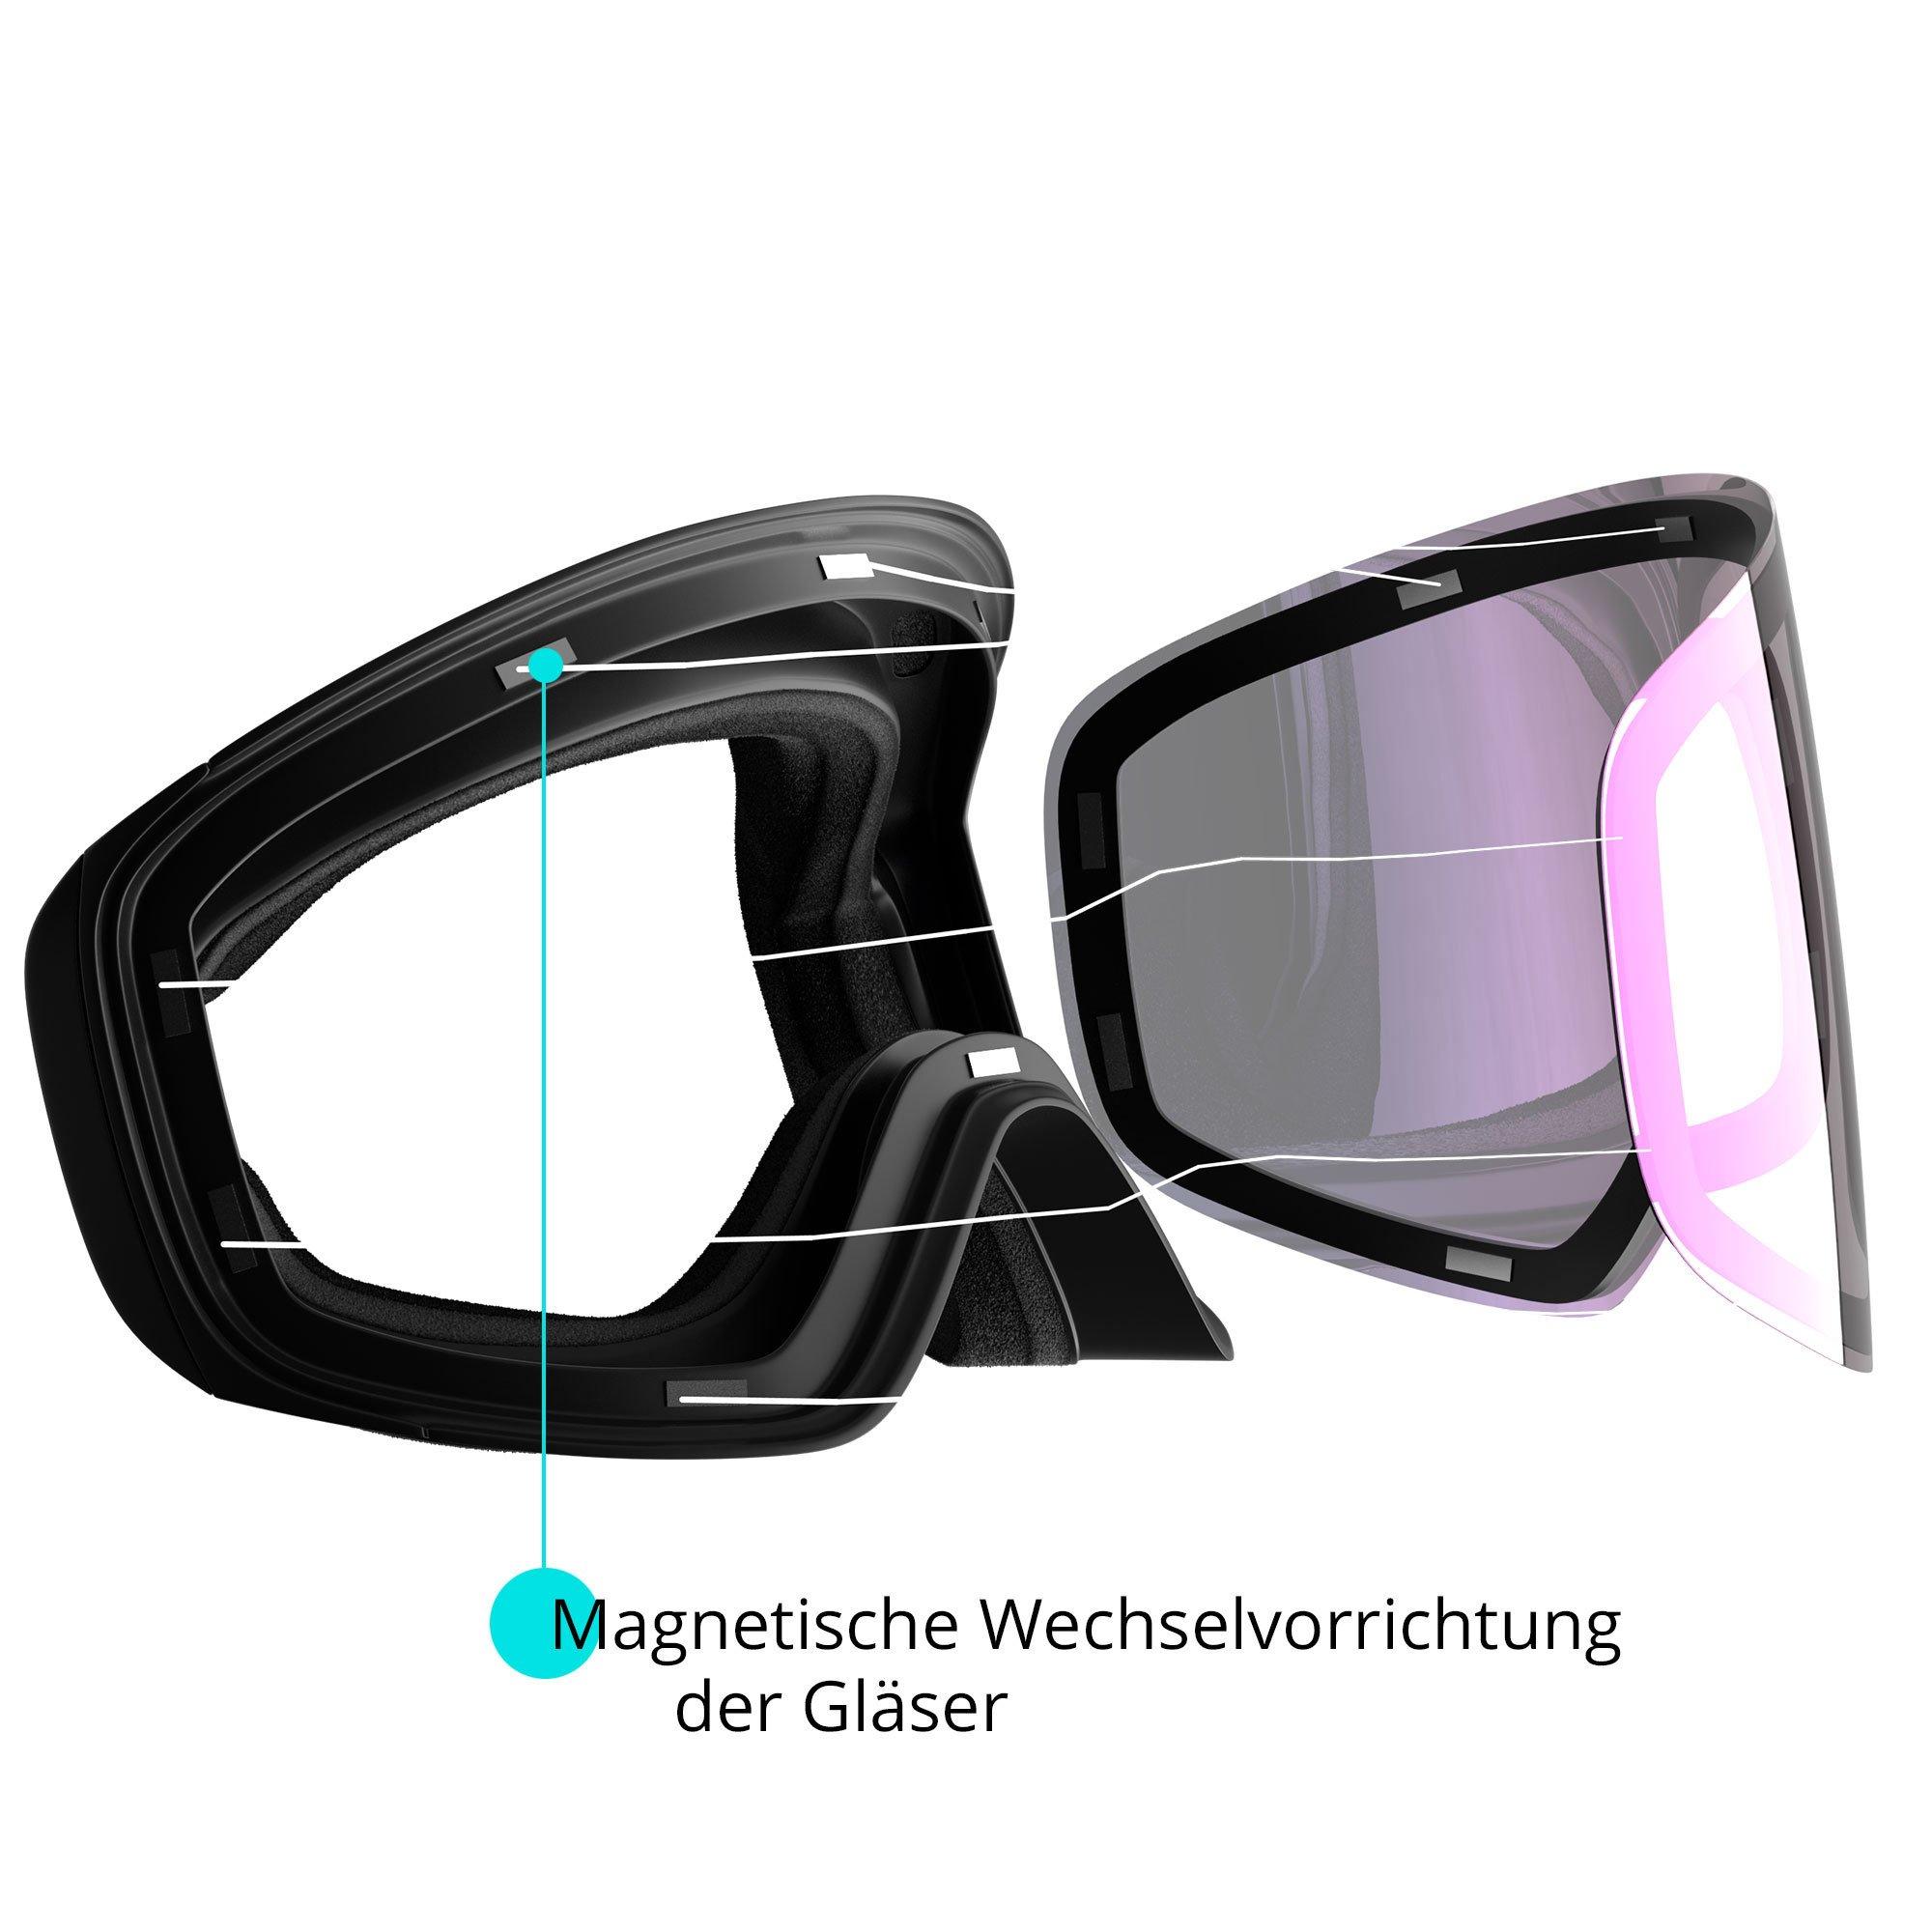 YEAZ  APEX Magnet-Ski-Snowboardbrille grün verspiegelt/schwarz 